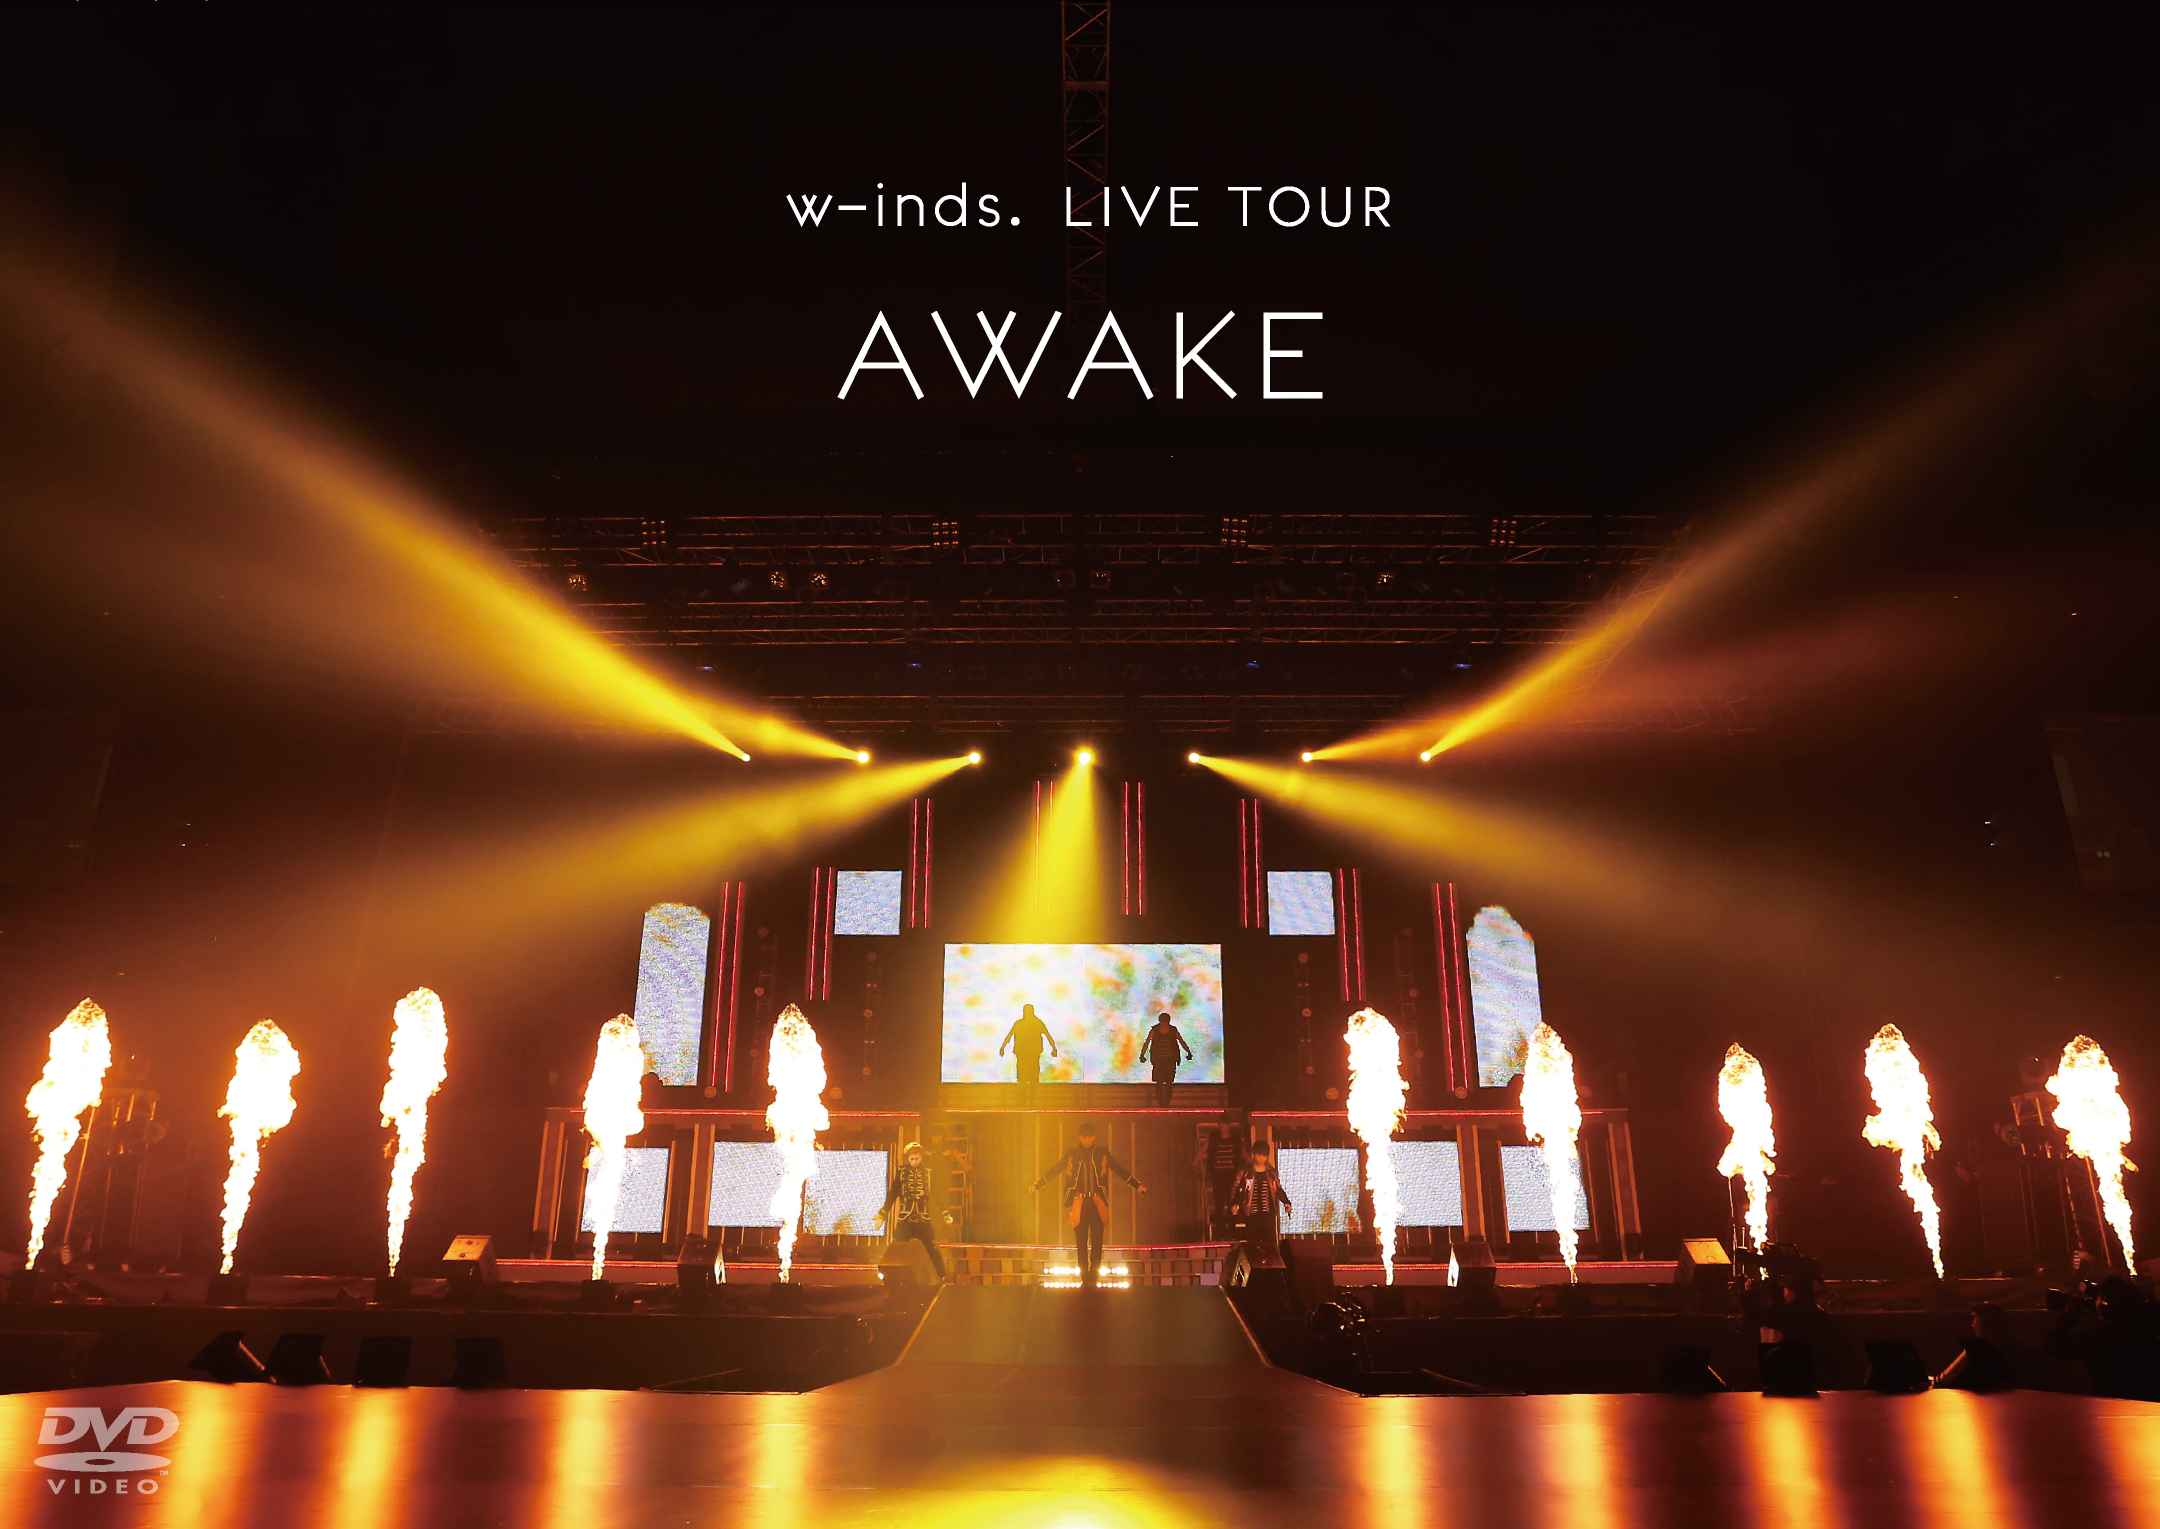 w-inds. LIVE TOUR "AWAKE" at 日本武道館